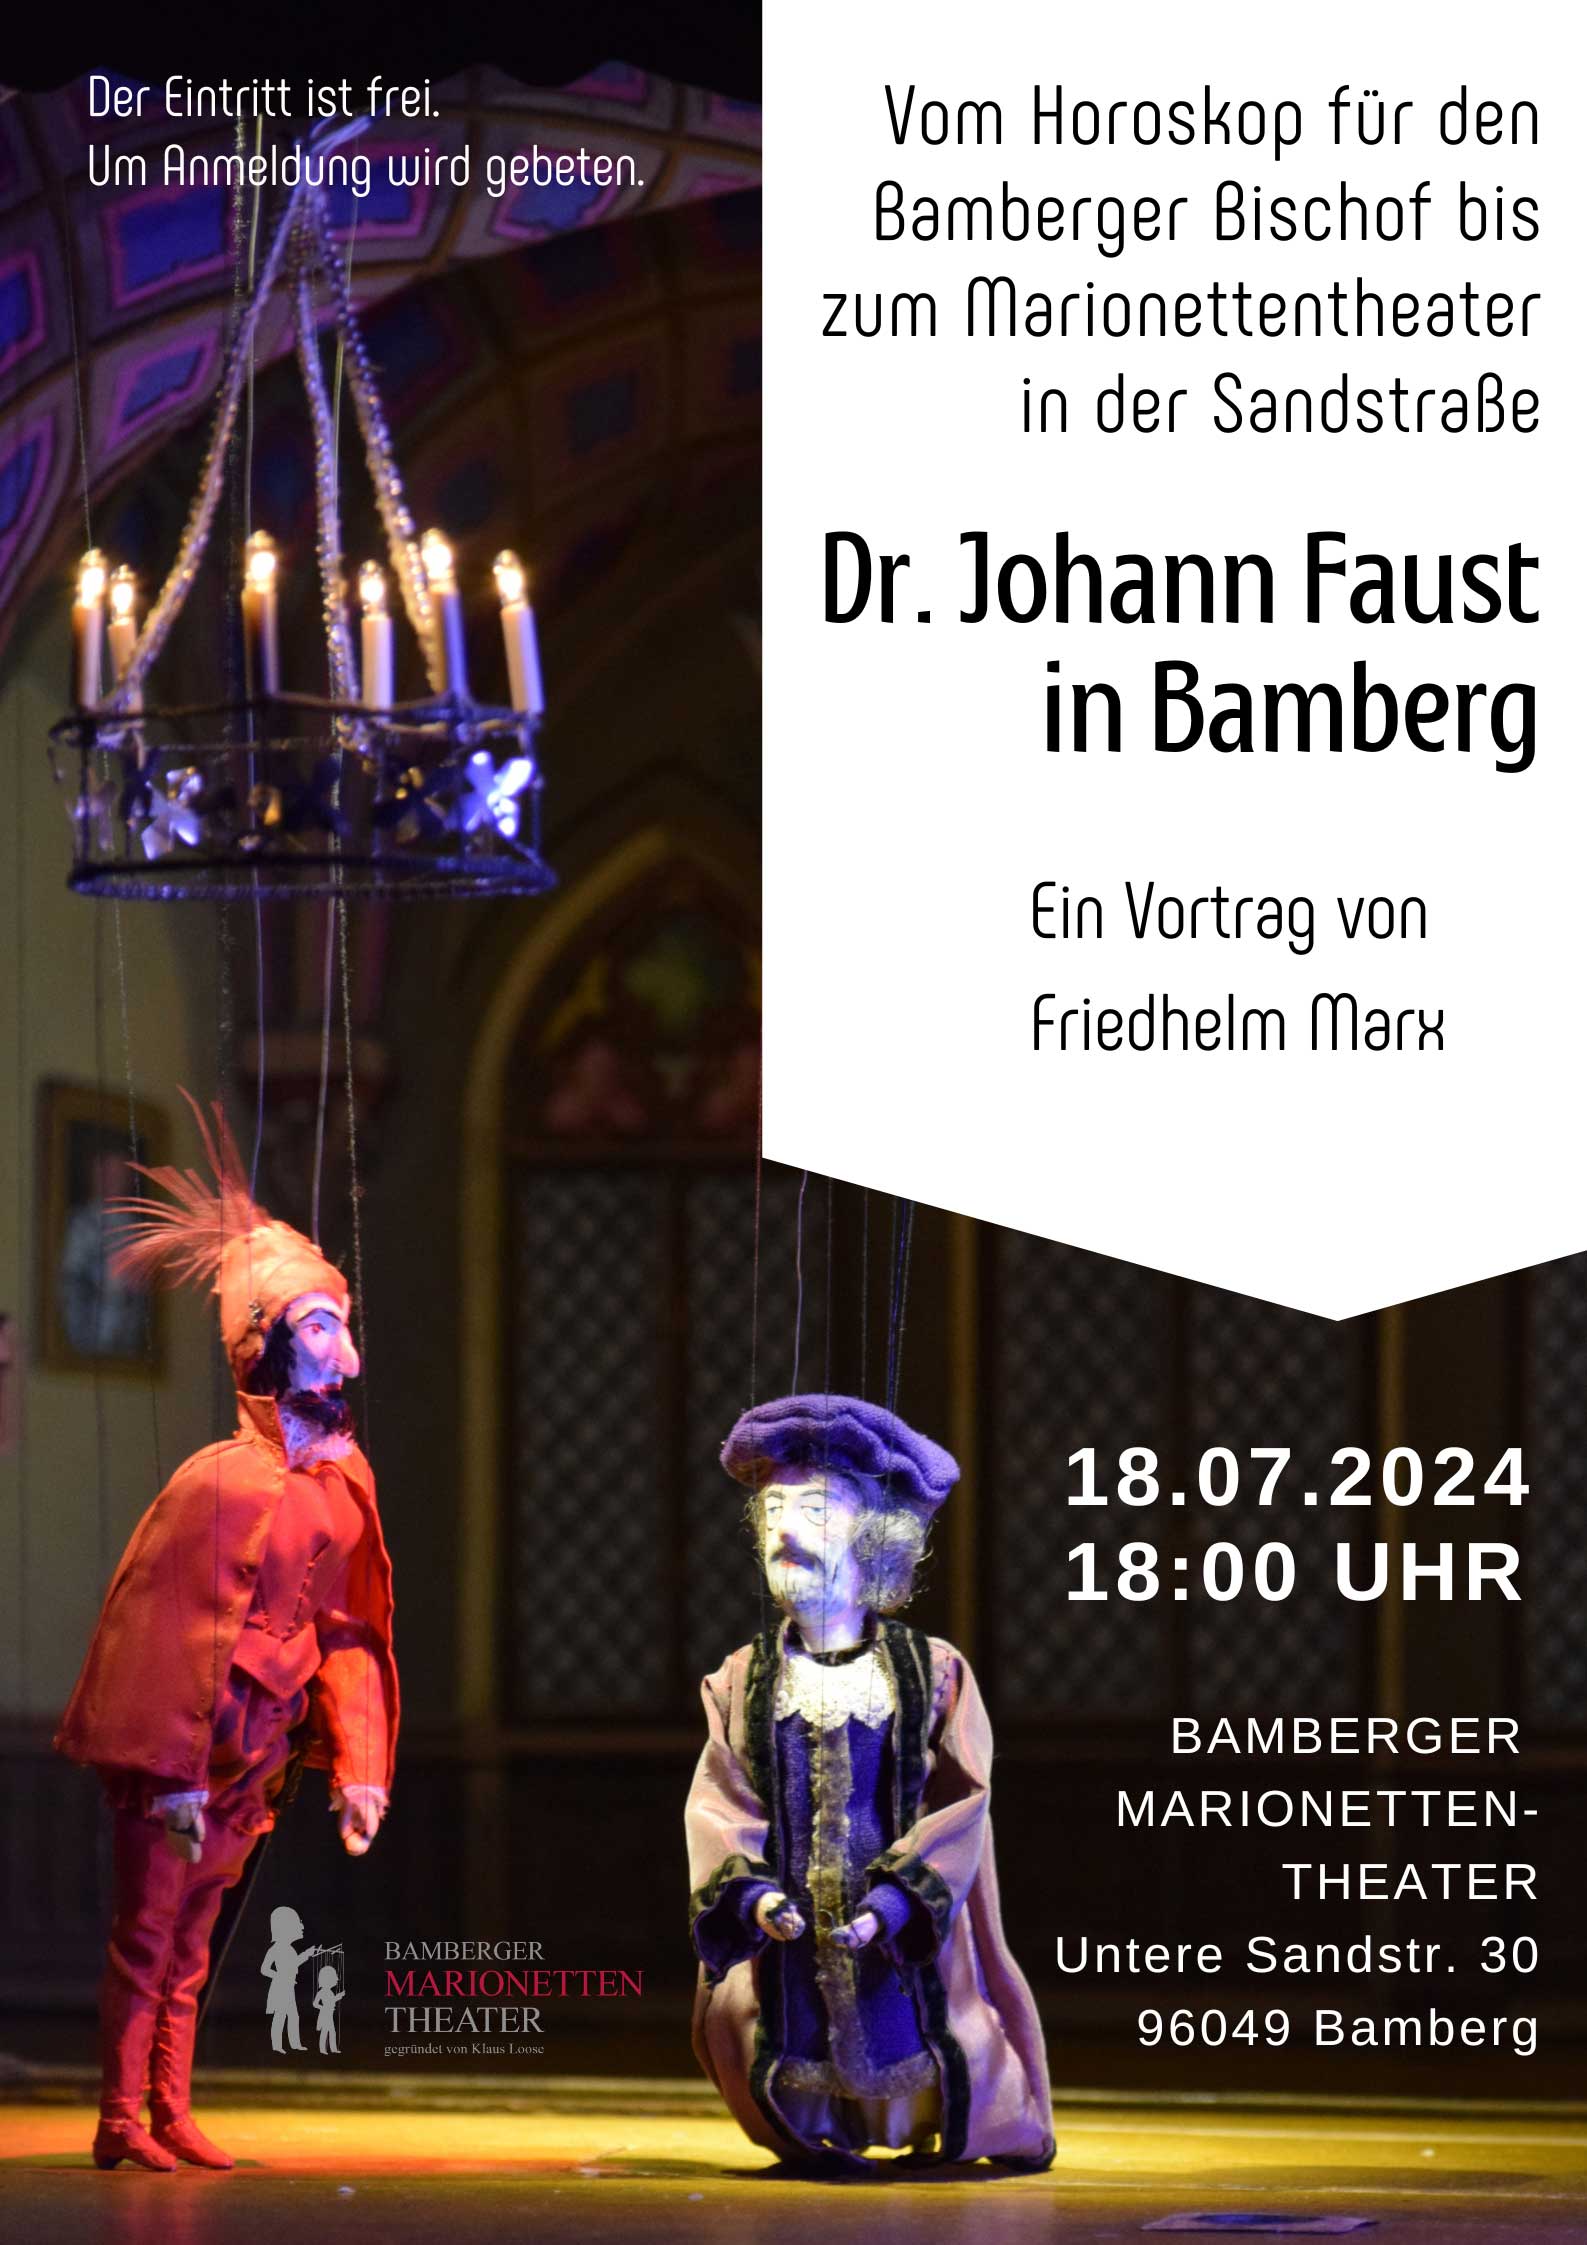 18. Juni 2024 18:00 Uhr - Dr. Johann Faust in Bamberg: vom Horoskop für den Bamberger Bischof bis zum Marionettentheater in der Sandstraße - Vortrag